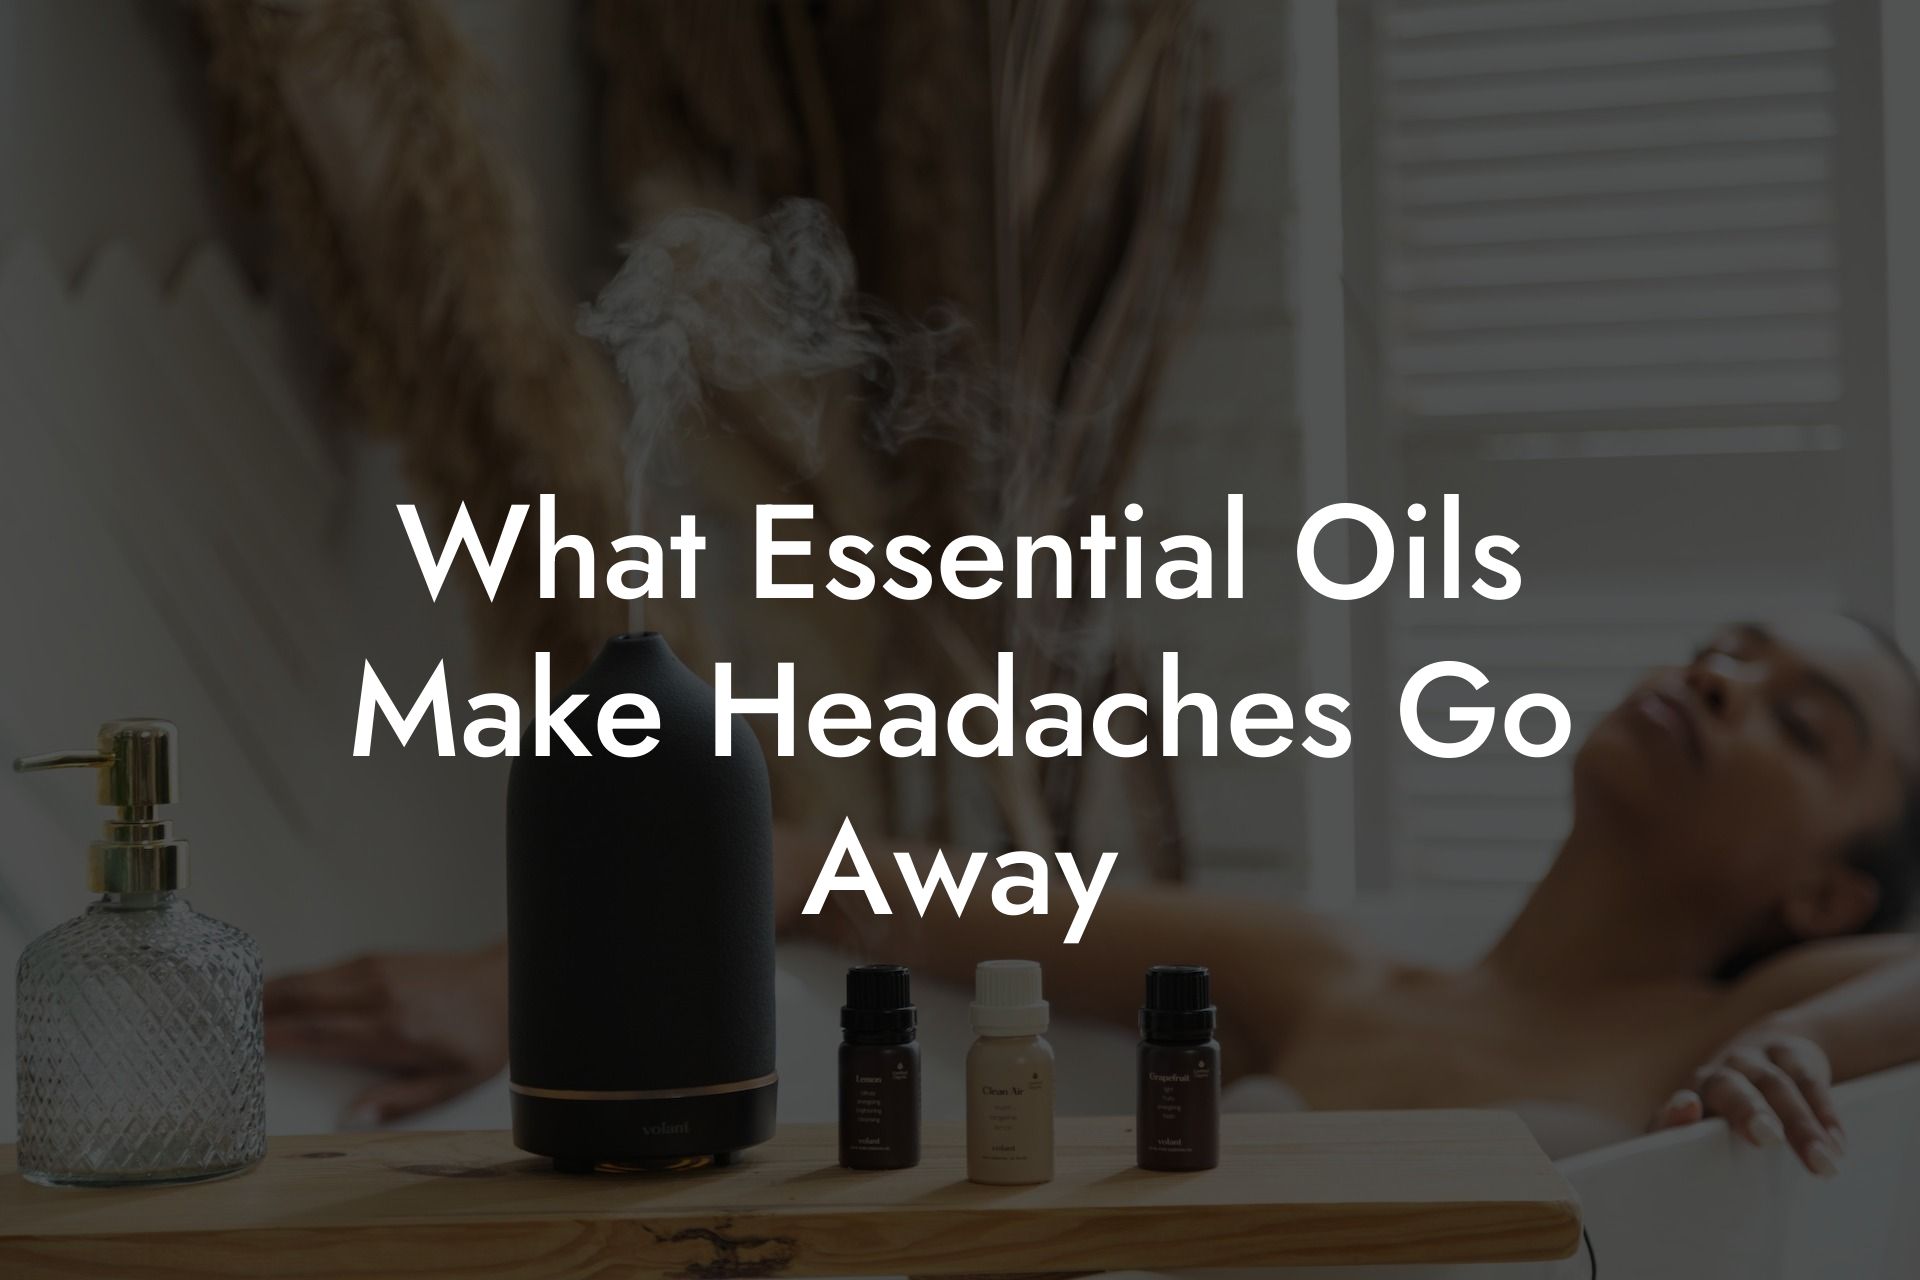 What Essential Oils Make Headaches Go Away